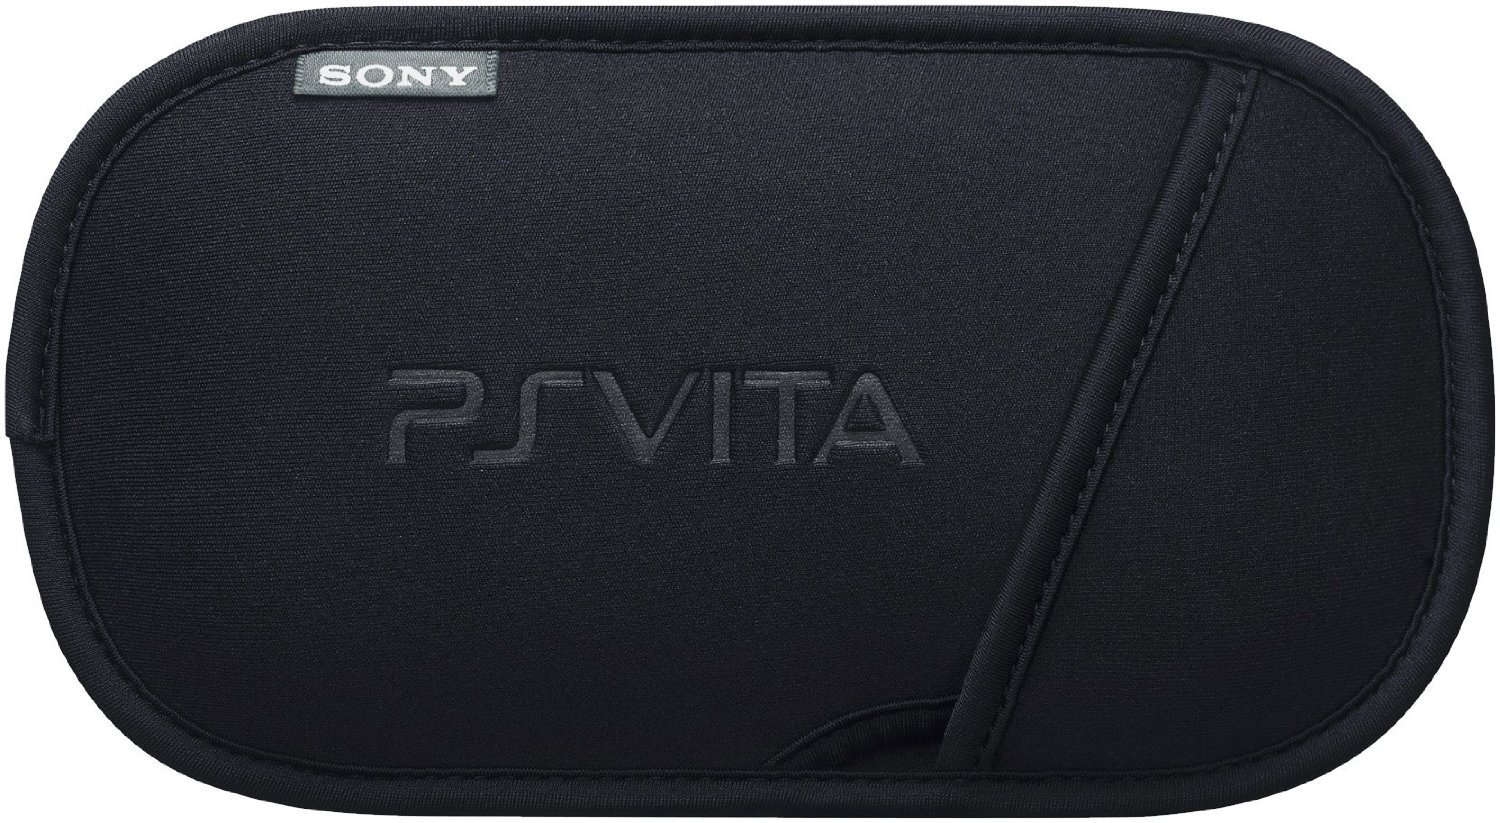 PS Vita Console Pouch